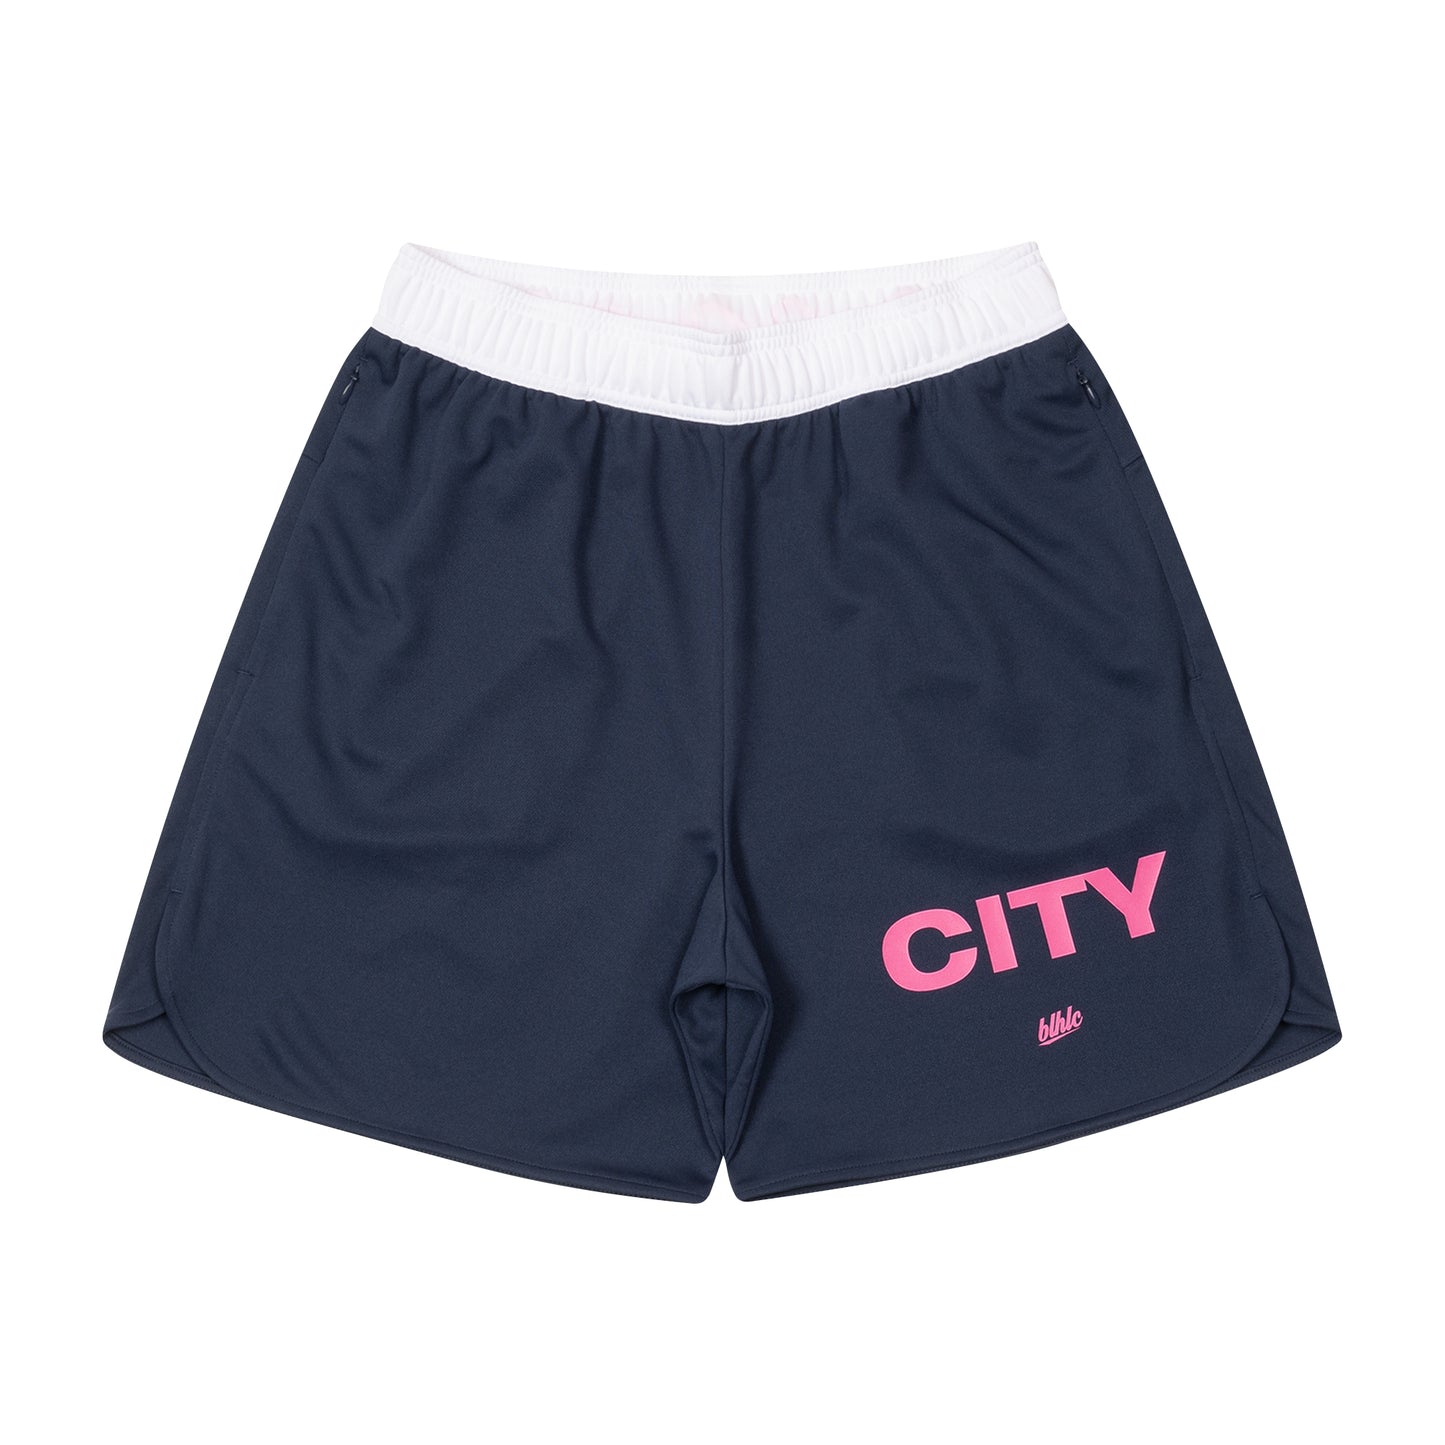 MY CITY Zip Shorts (navy)